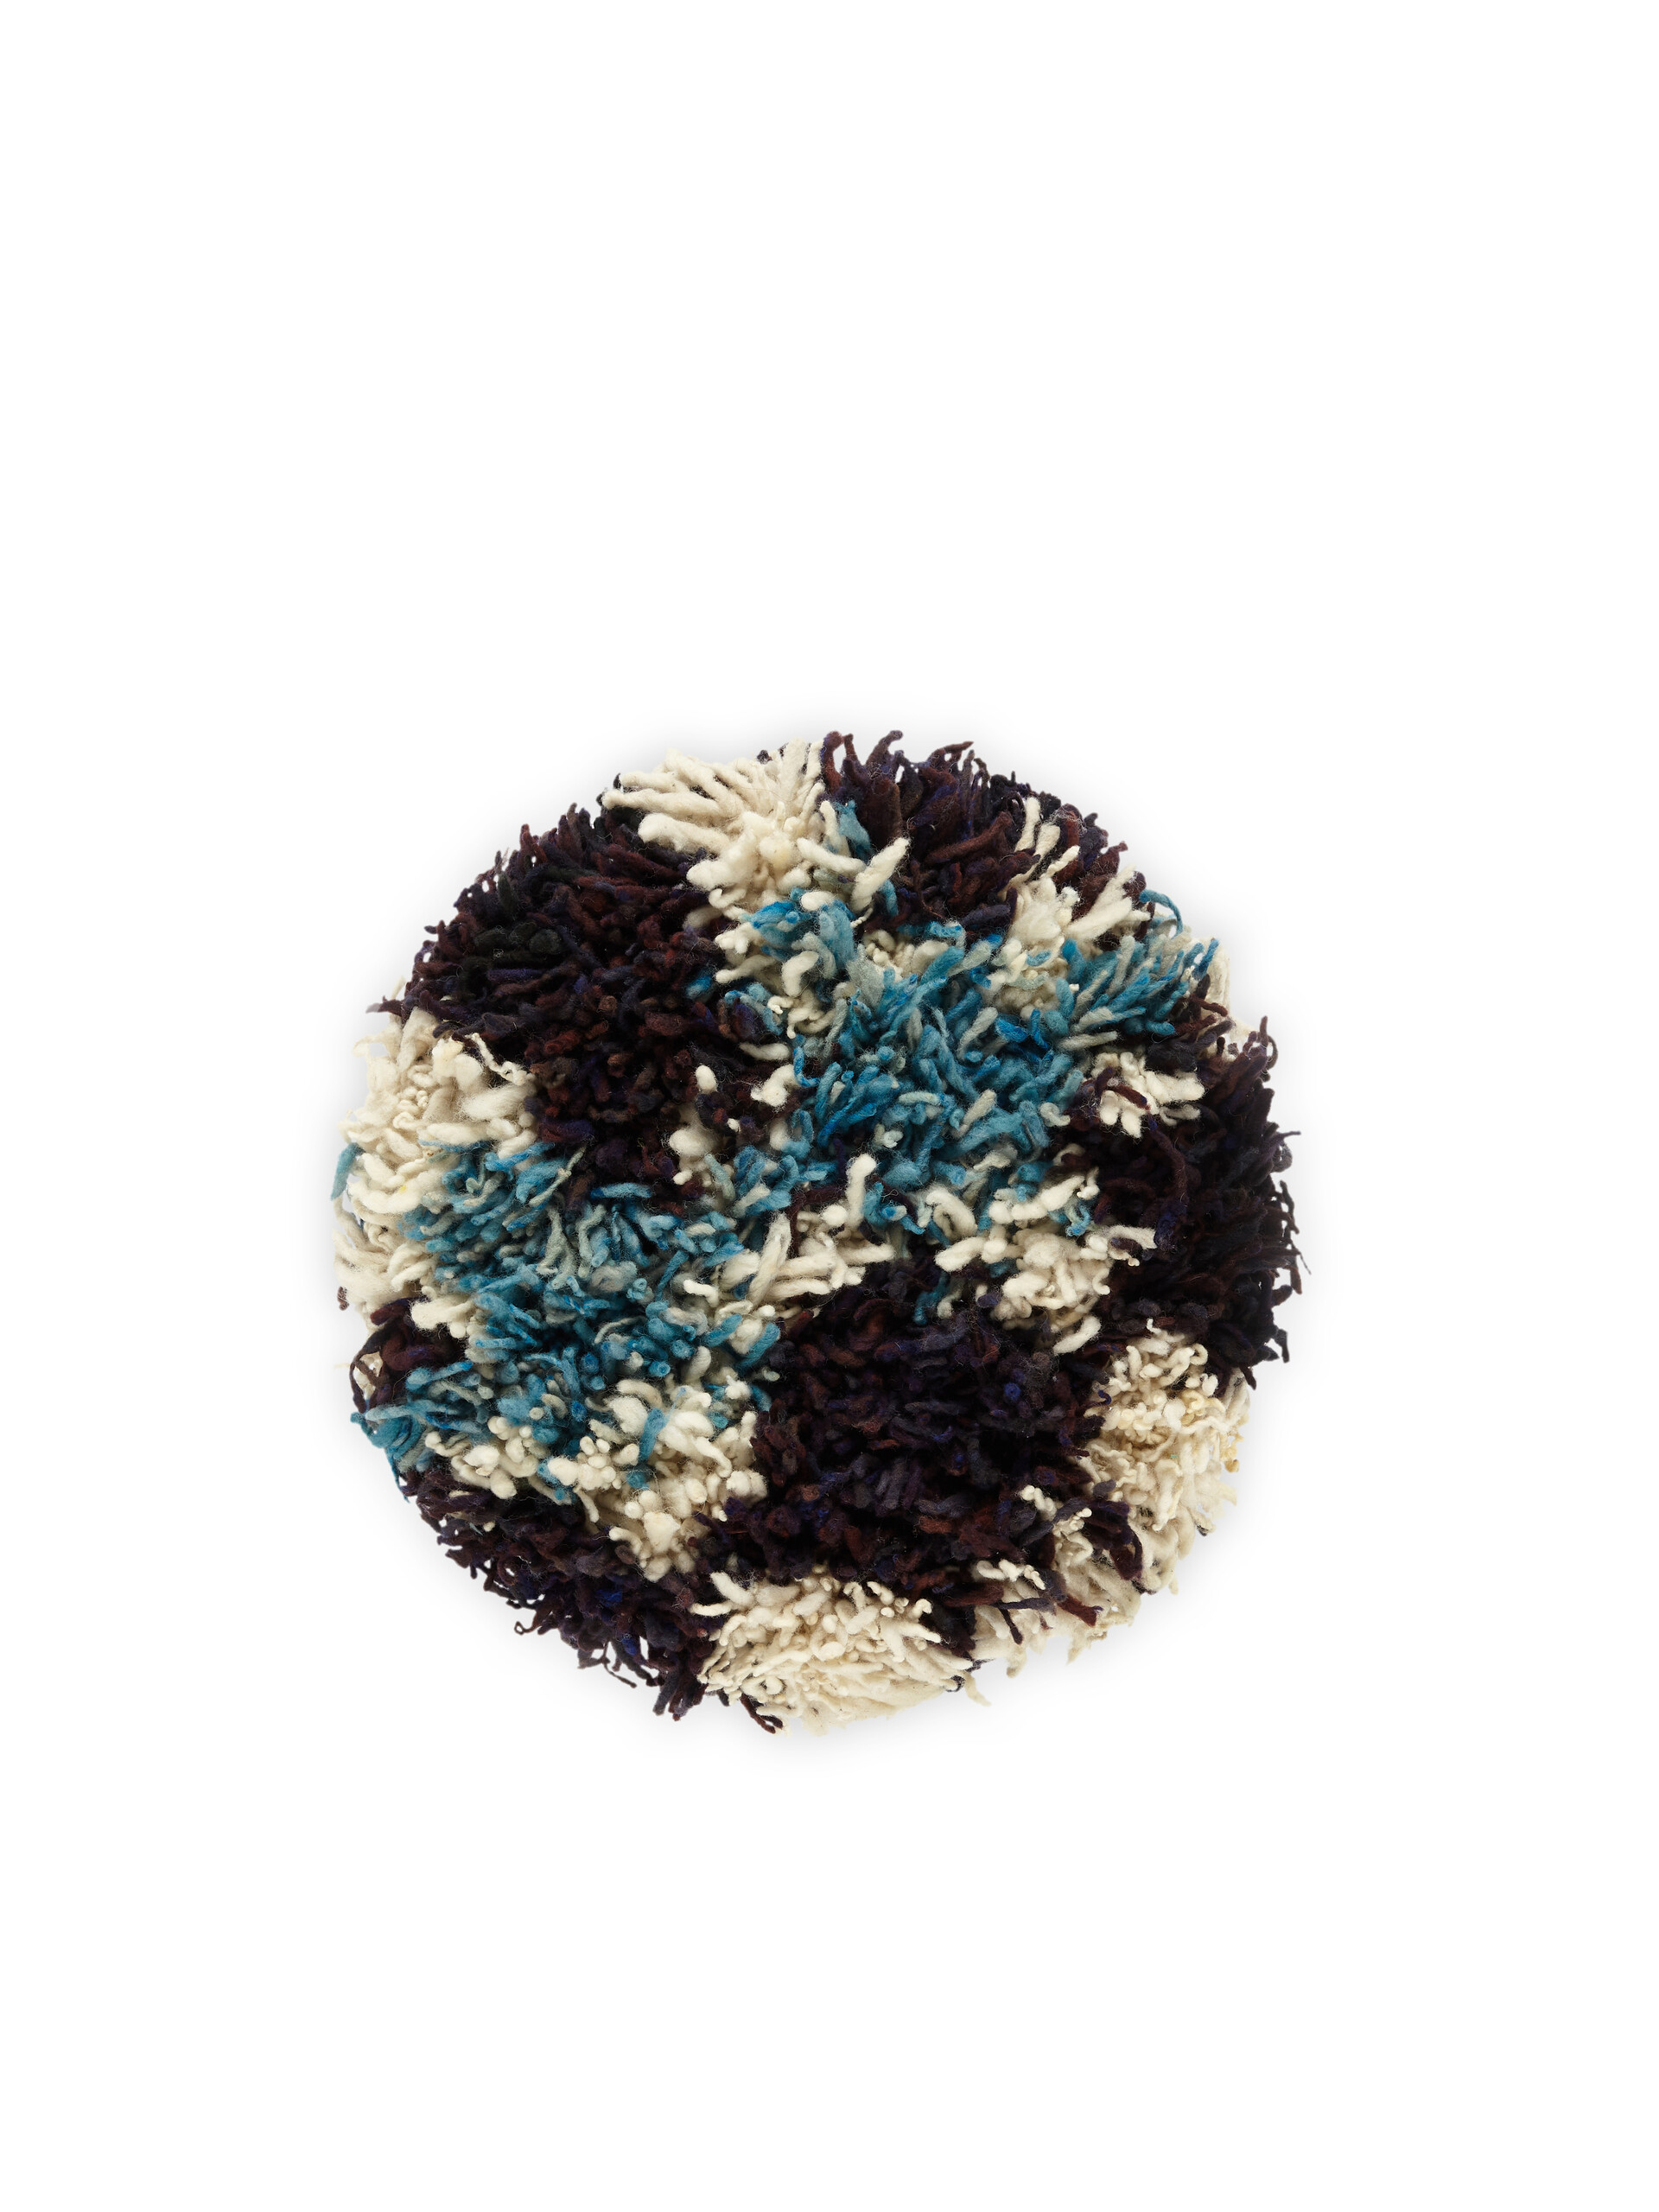 Sgabello MARNI MARKET in ferro lana blu multicolor - Arredamento - Image 3